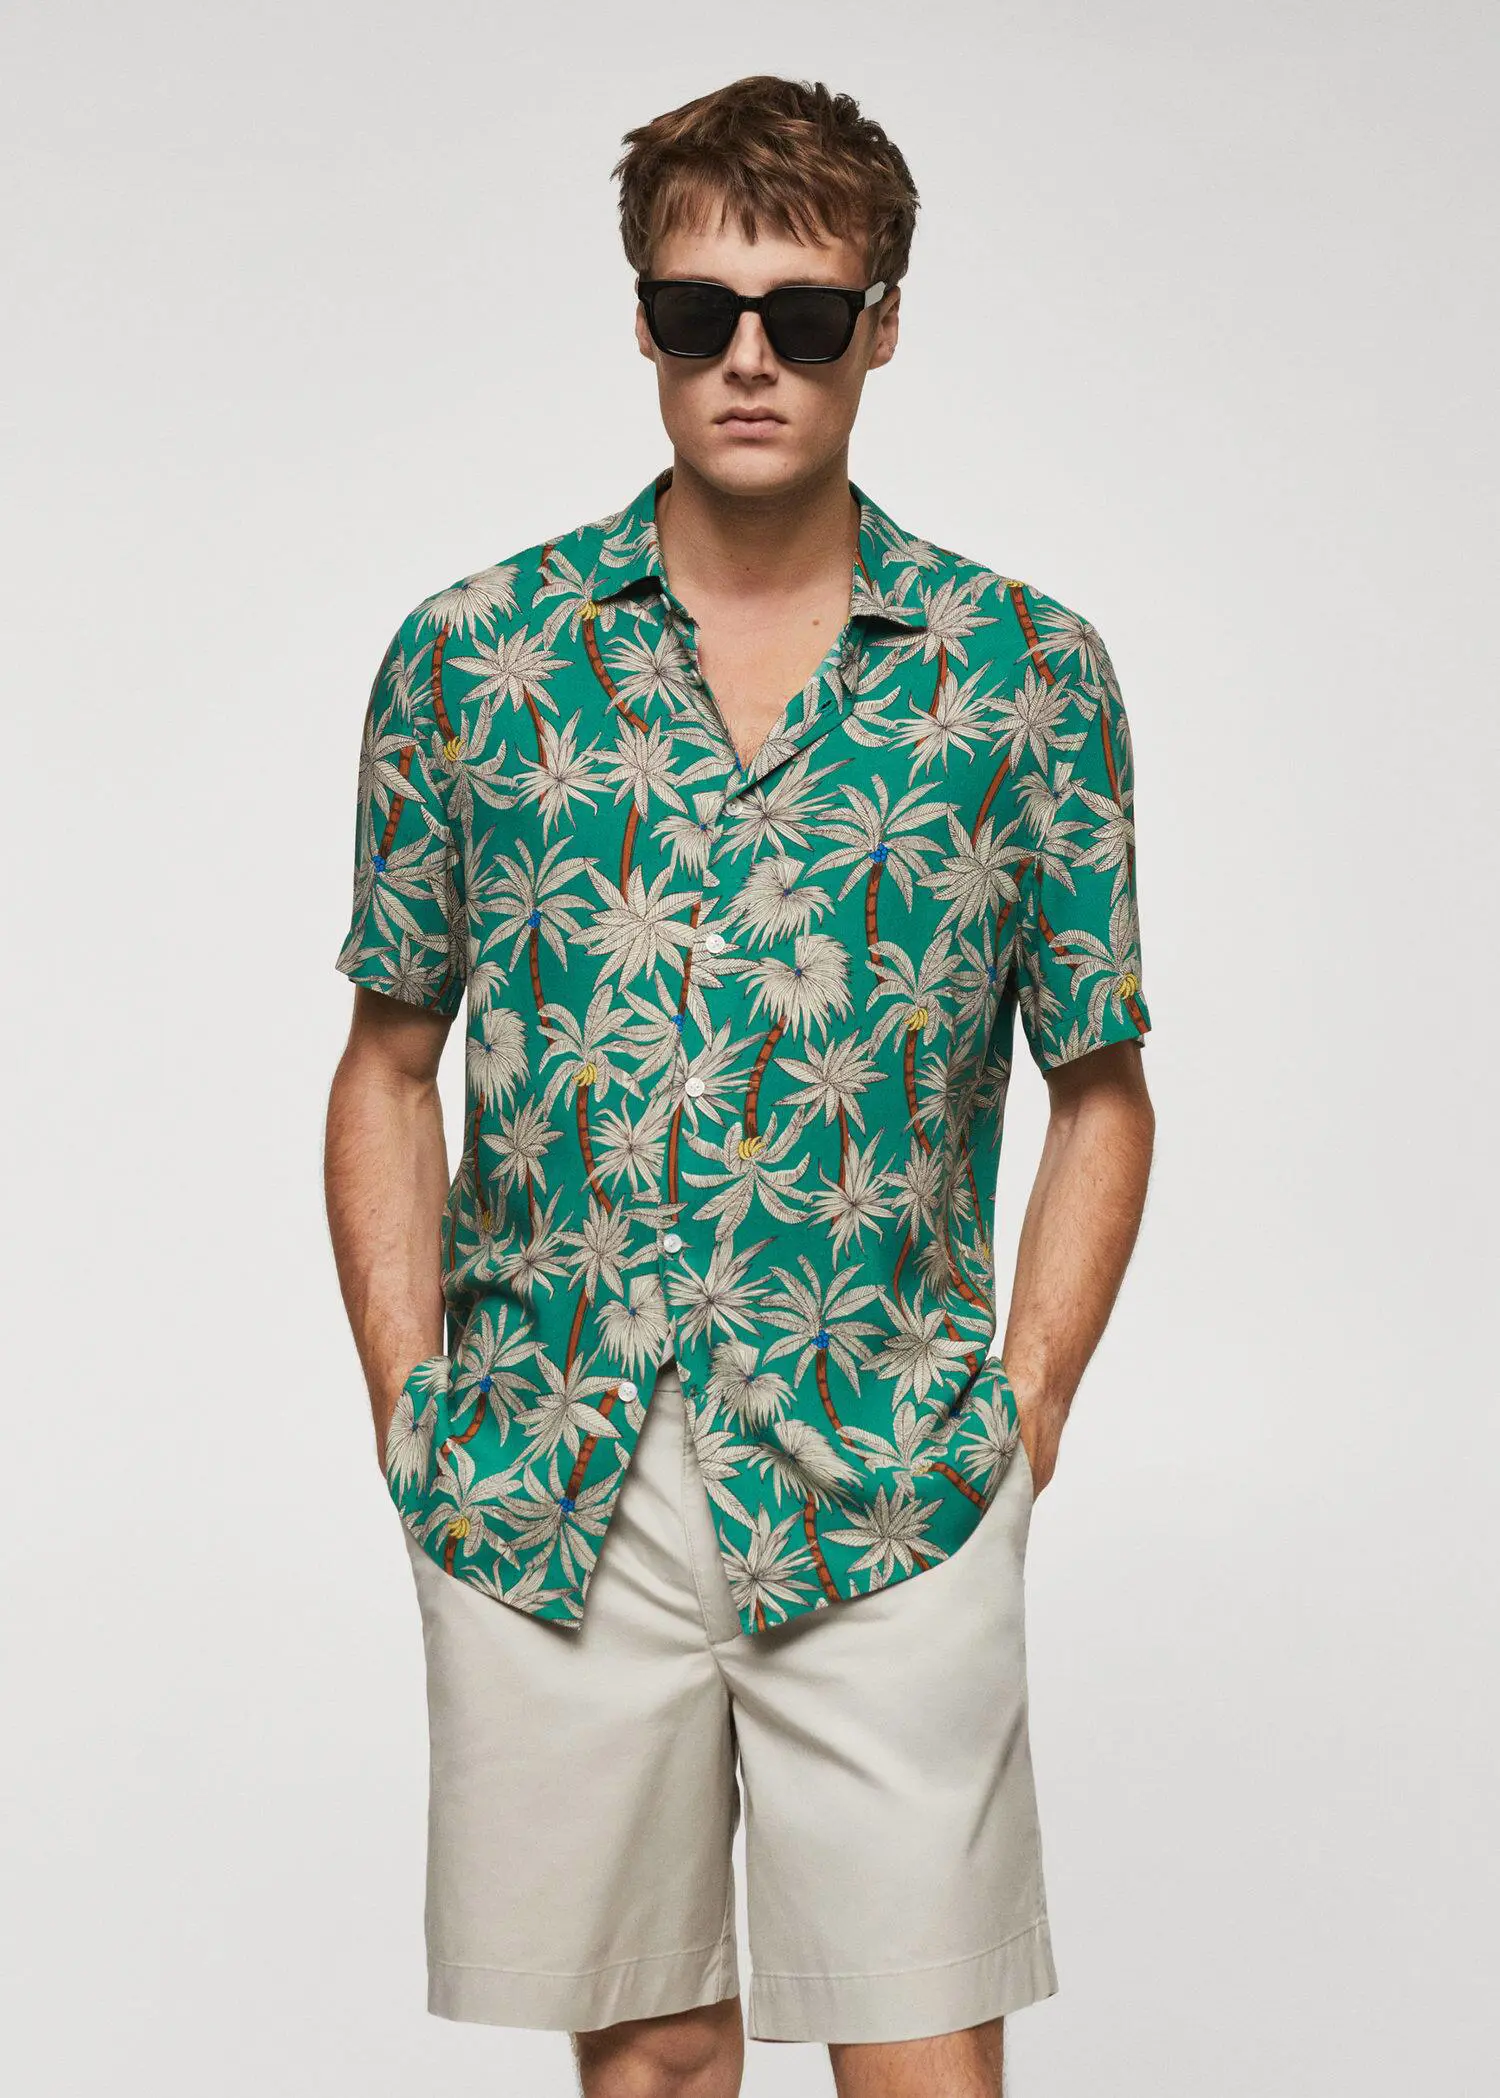 Mango Hawaiian print short sleeve shirt. 1